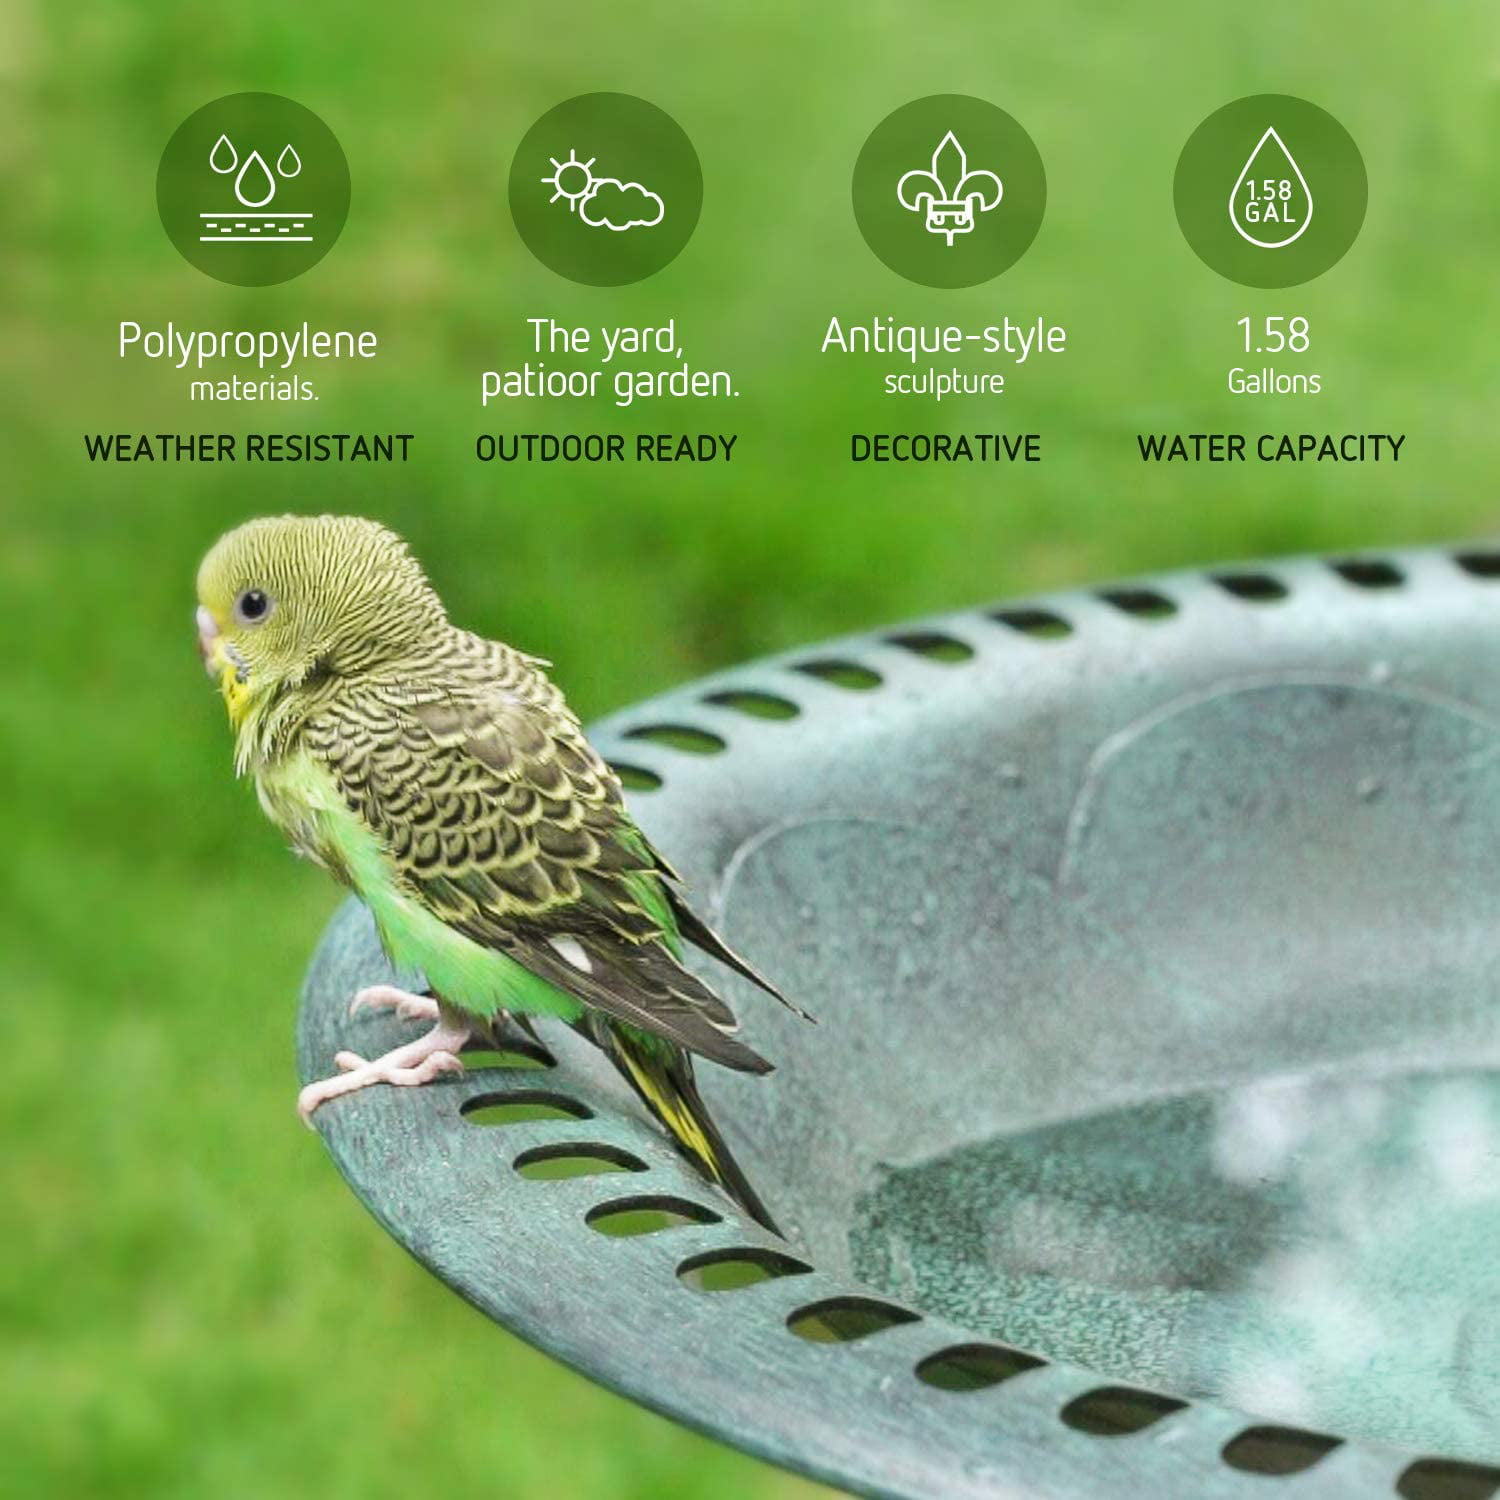 Weather Resist Details about   VIVOSUN 2-in-1 Outdoor Garden Bird Bath with Flower Planter Base 